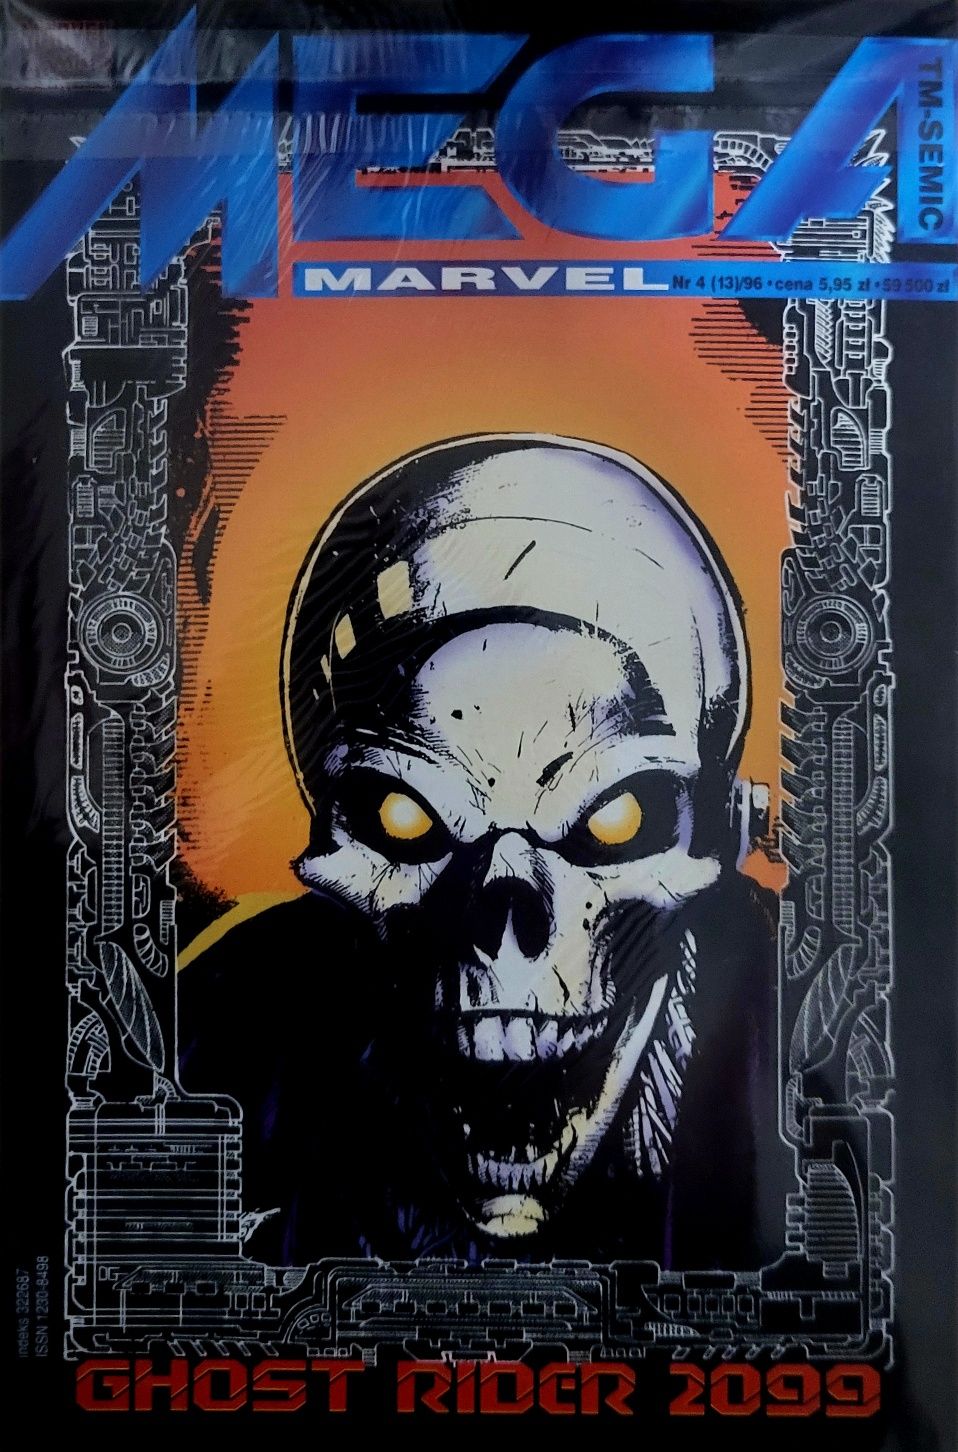 Komiks MEGA MARVEL Ghost Rider 2099 nr 4(13)/96 BDB